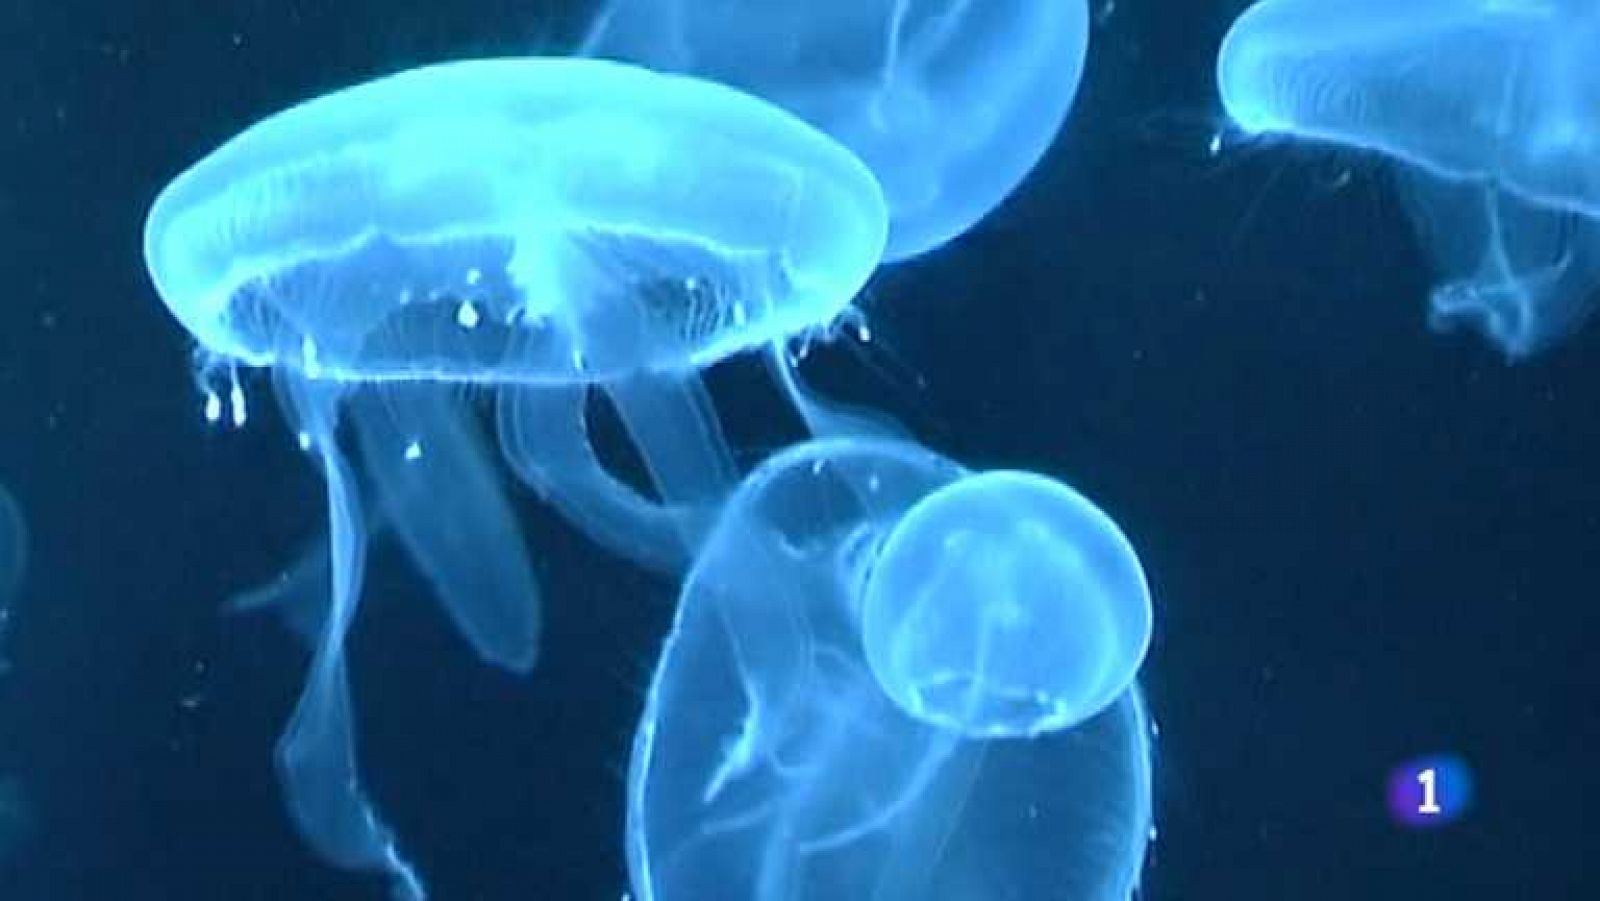 Repor - Alerta medusa